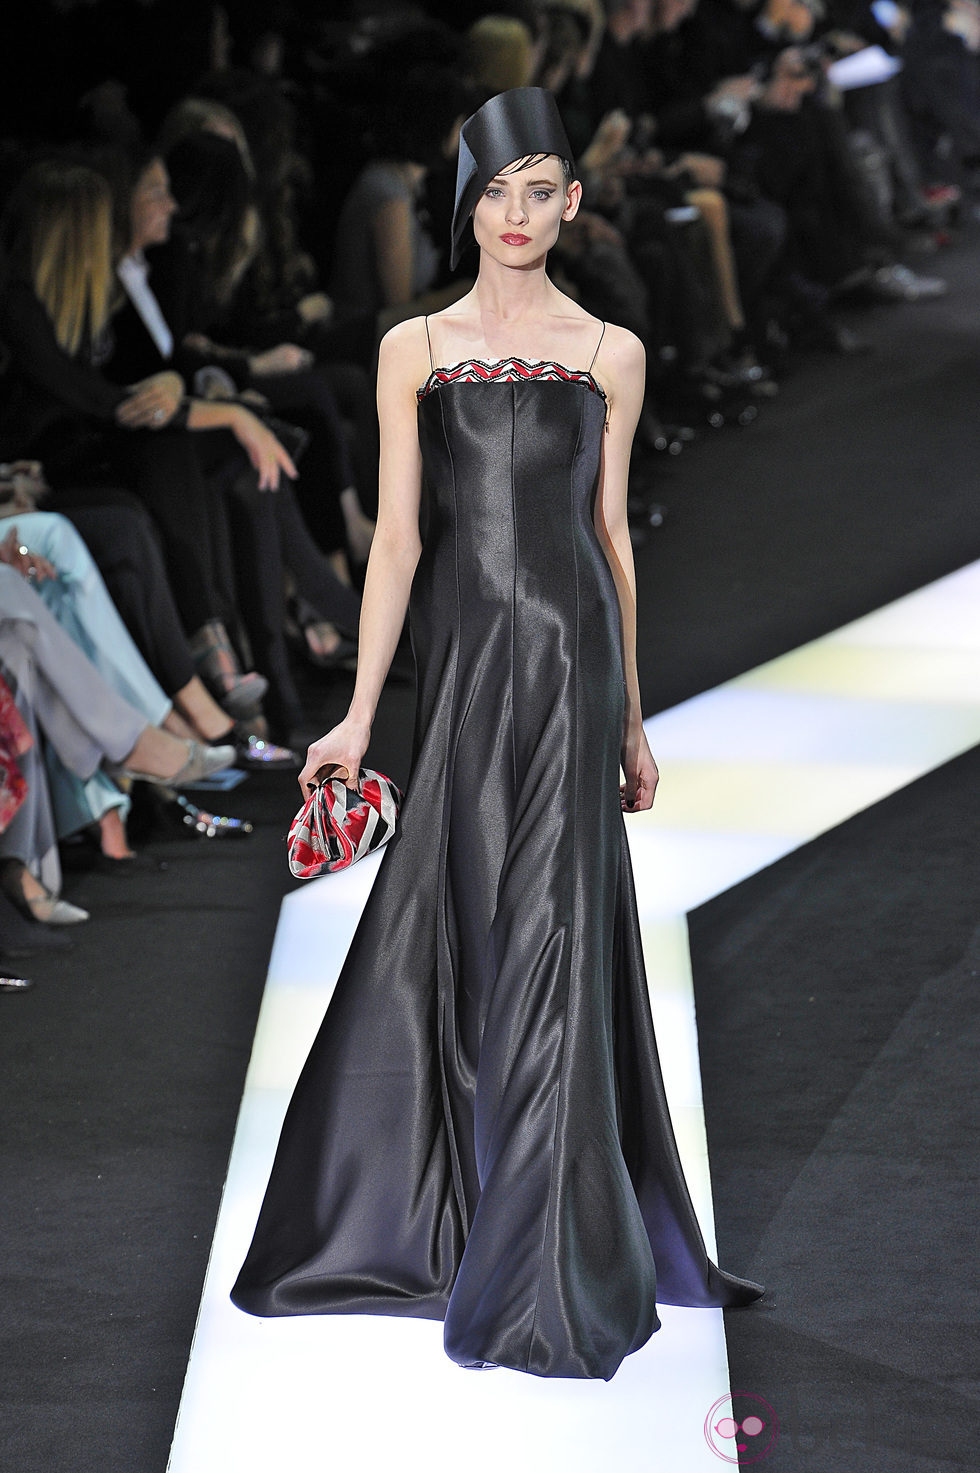 Vestido negro de la colección primavera/verano 2013 de Armani en la Semana de la Alta Costura de París